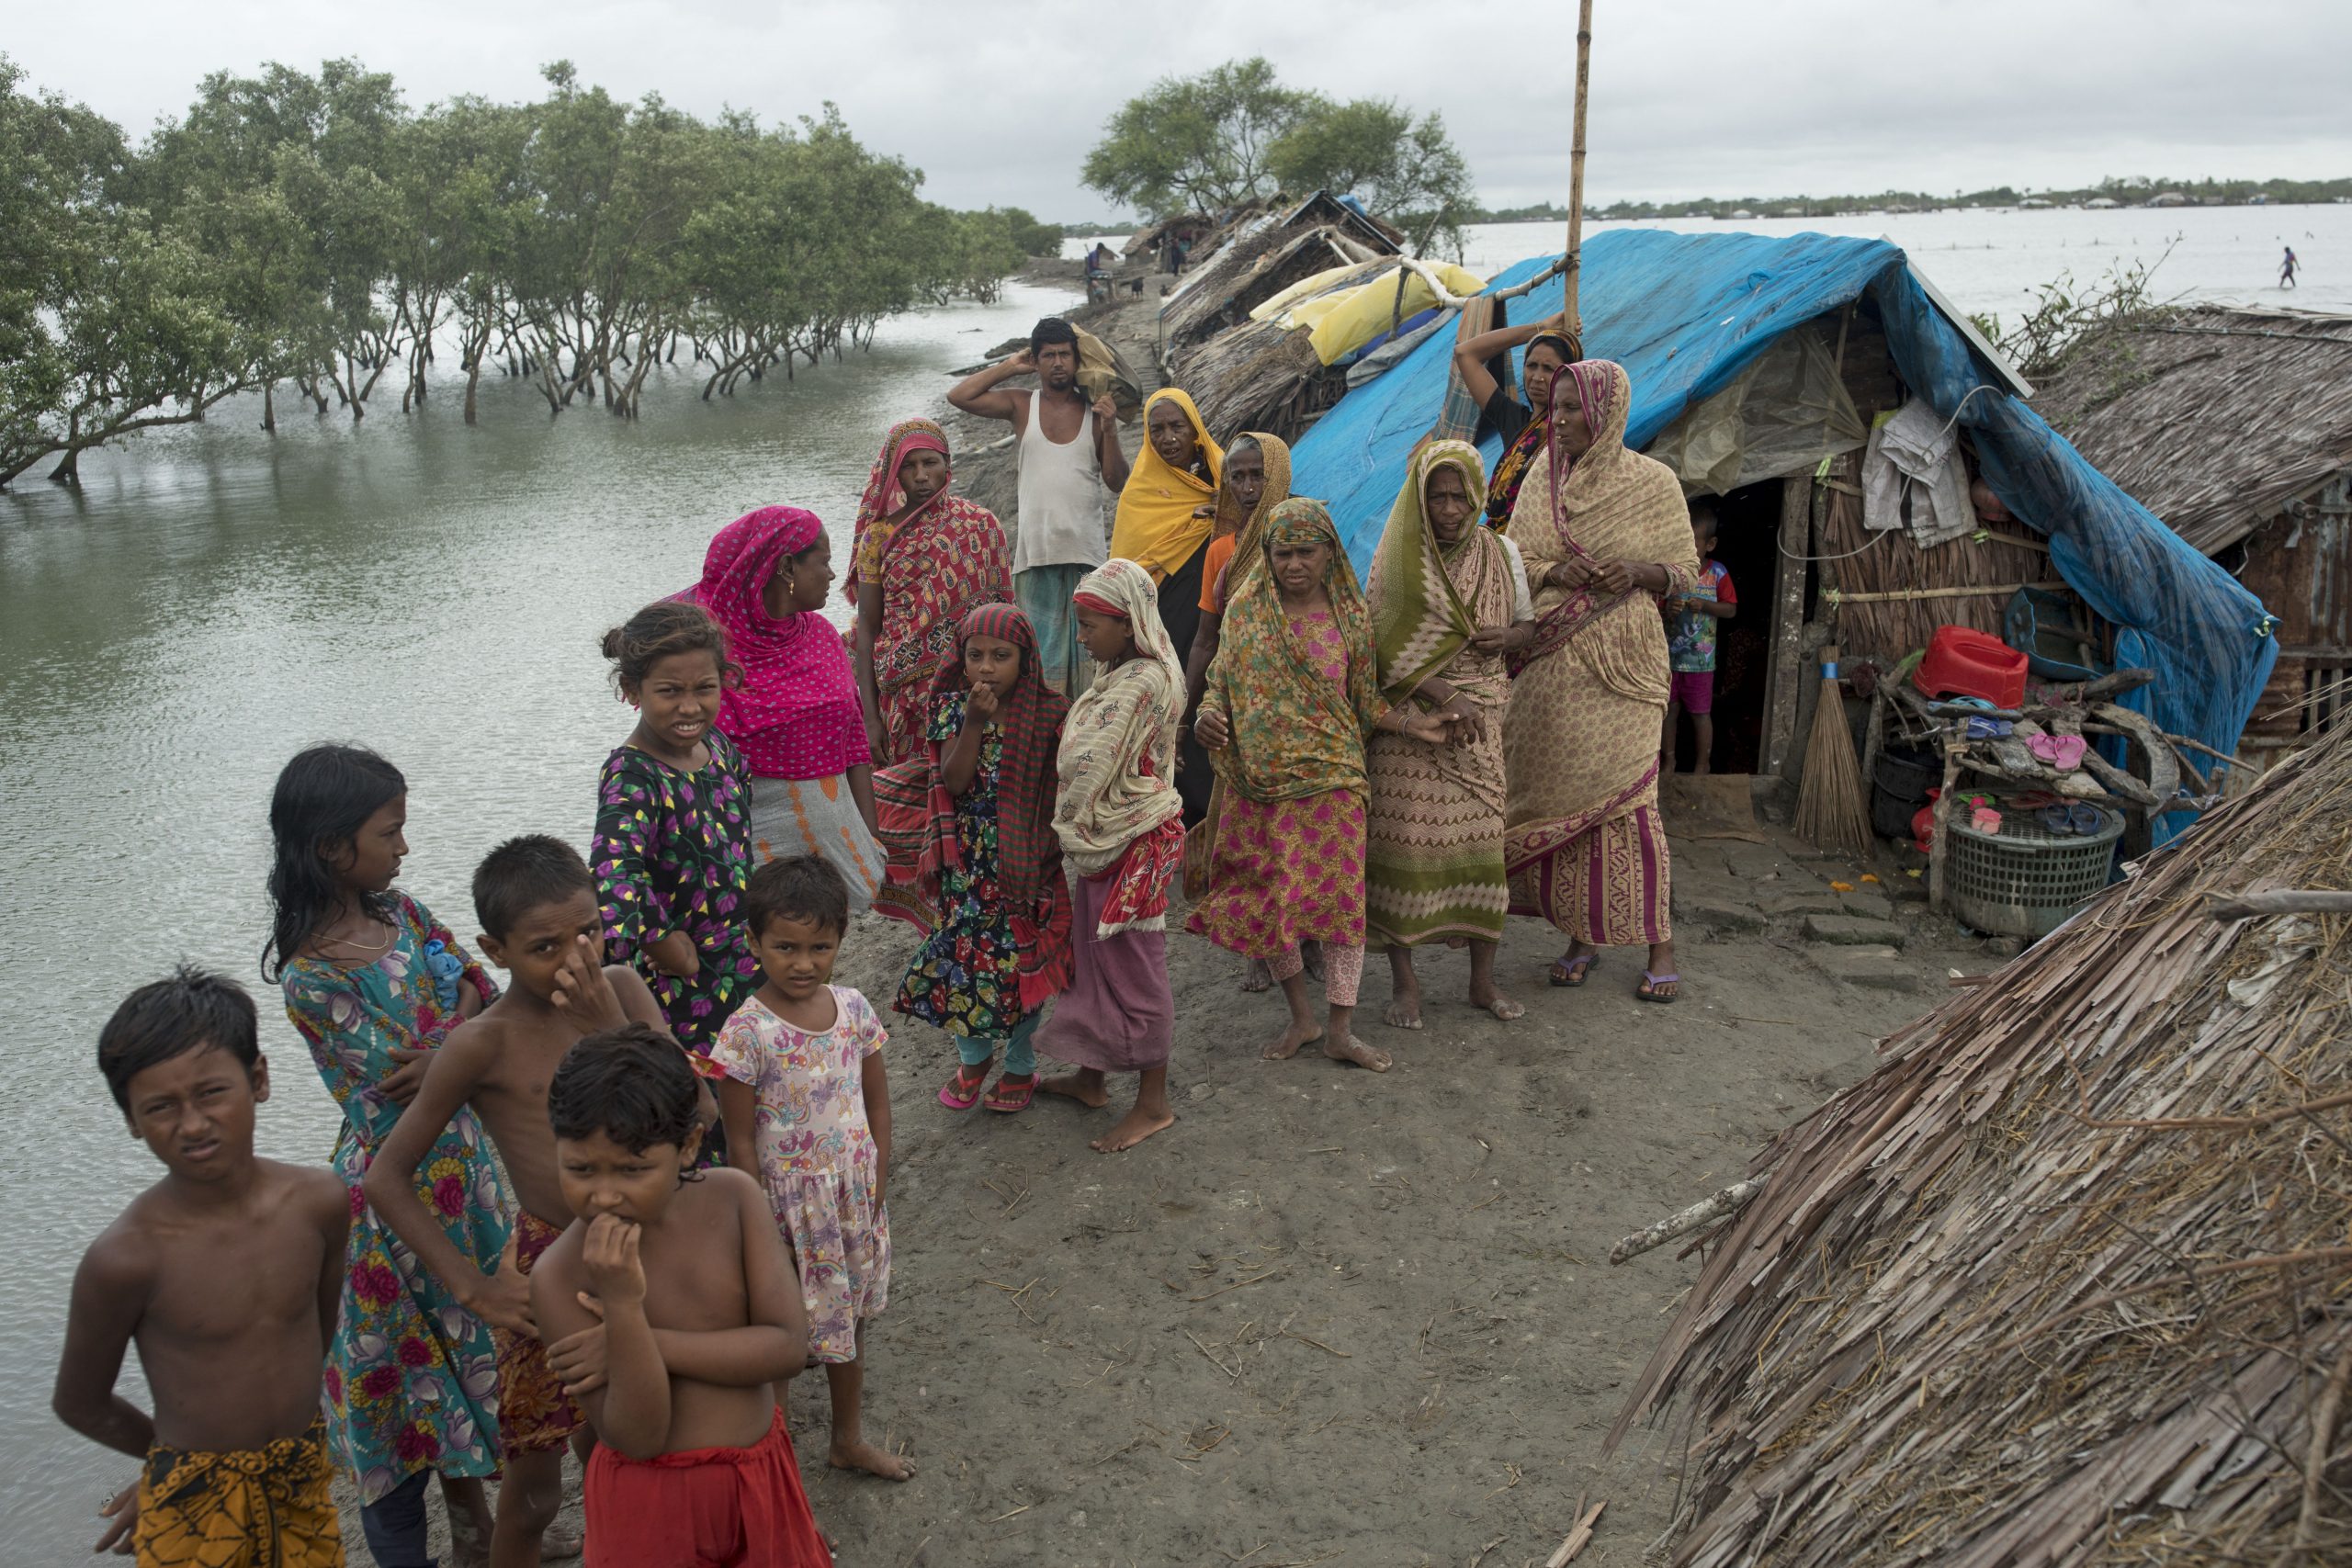 slidbane Genbruge bedstemor Behov for nødhjælp efter katastrofal sommer i Bangladesh | Globalnyt